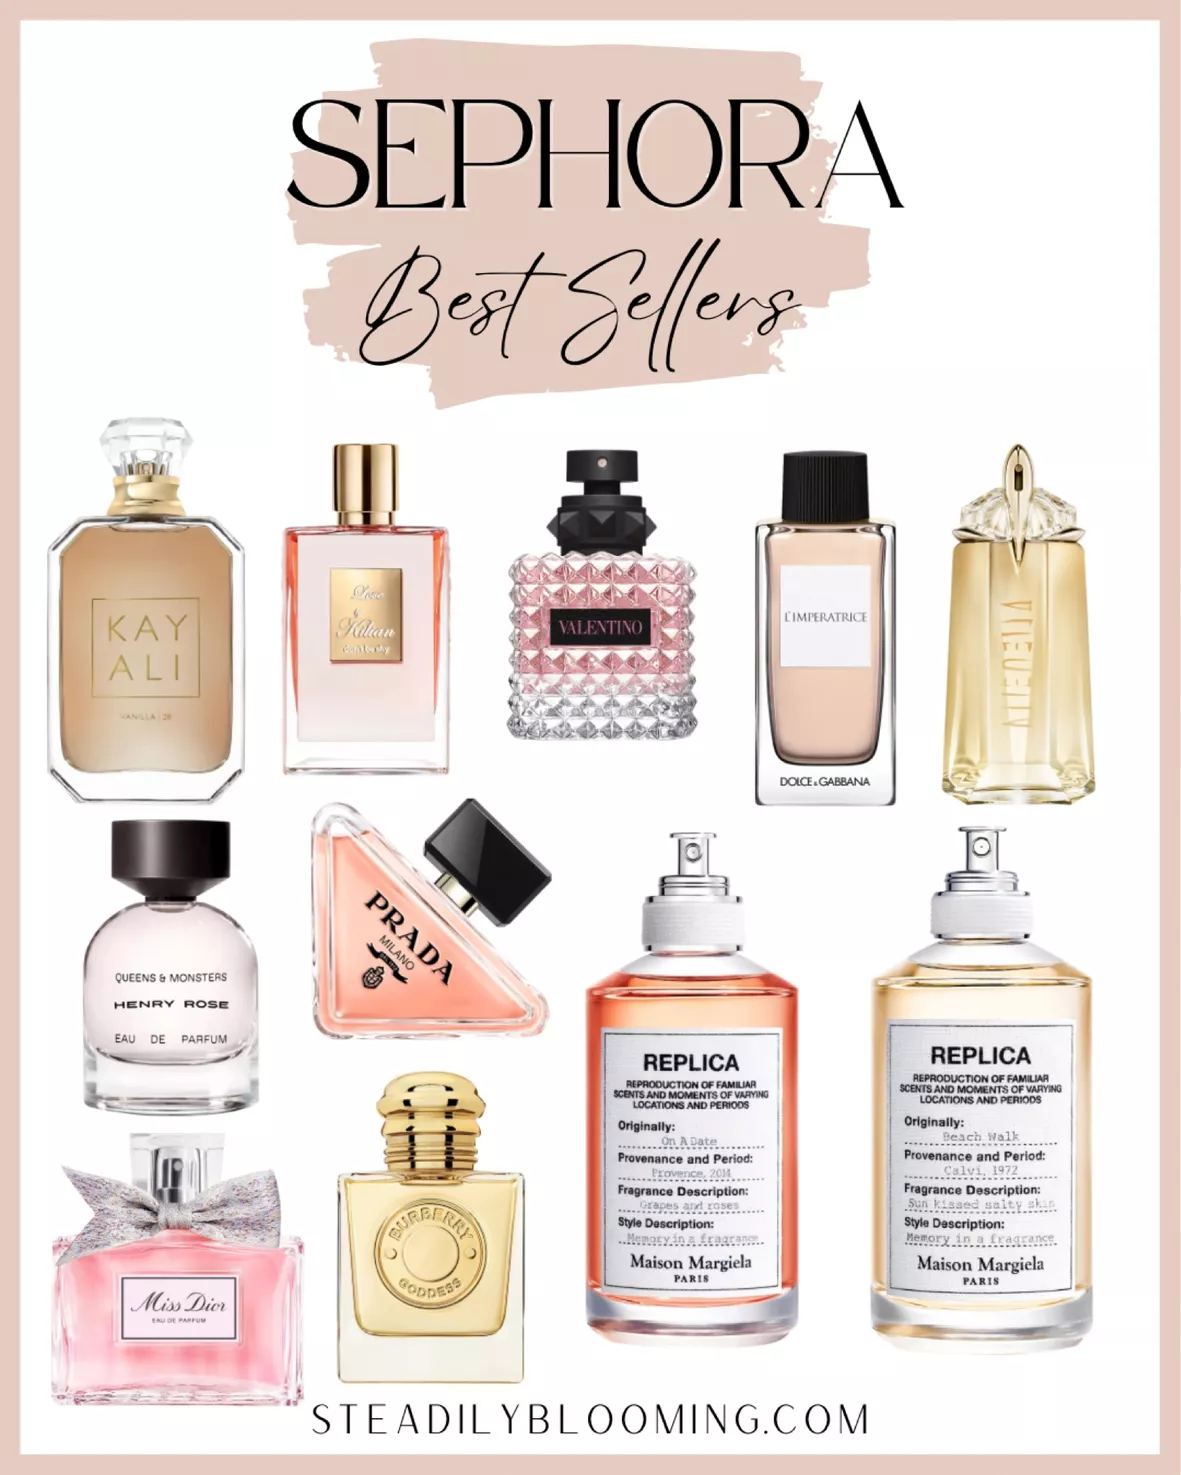 Sephora Best Selling Perfume for Women 2017 - 2018